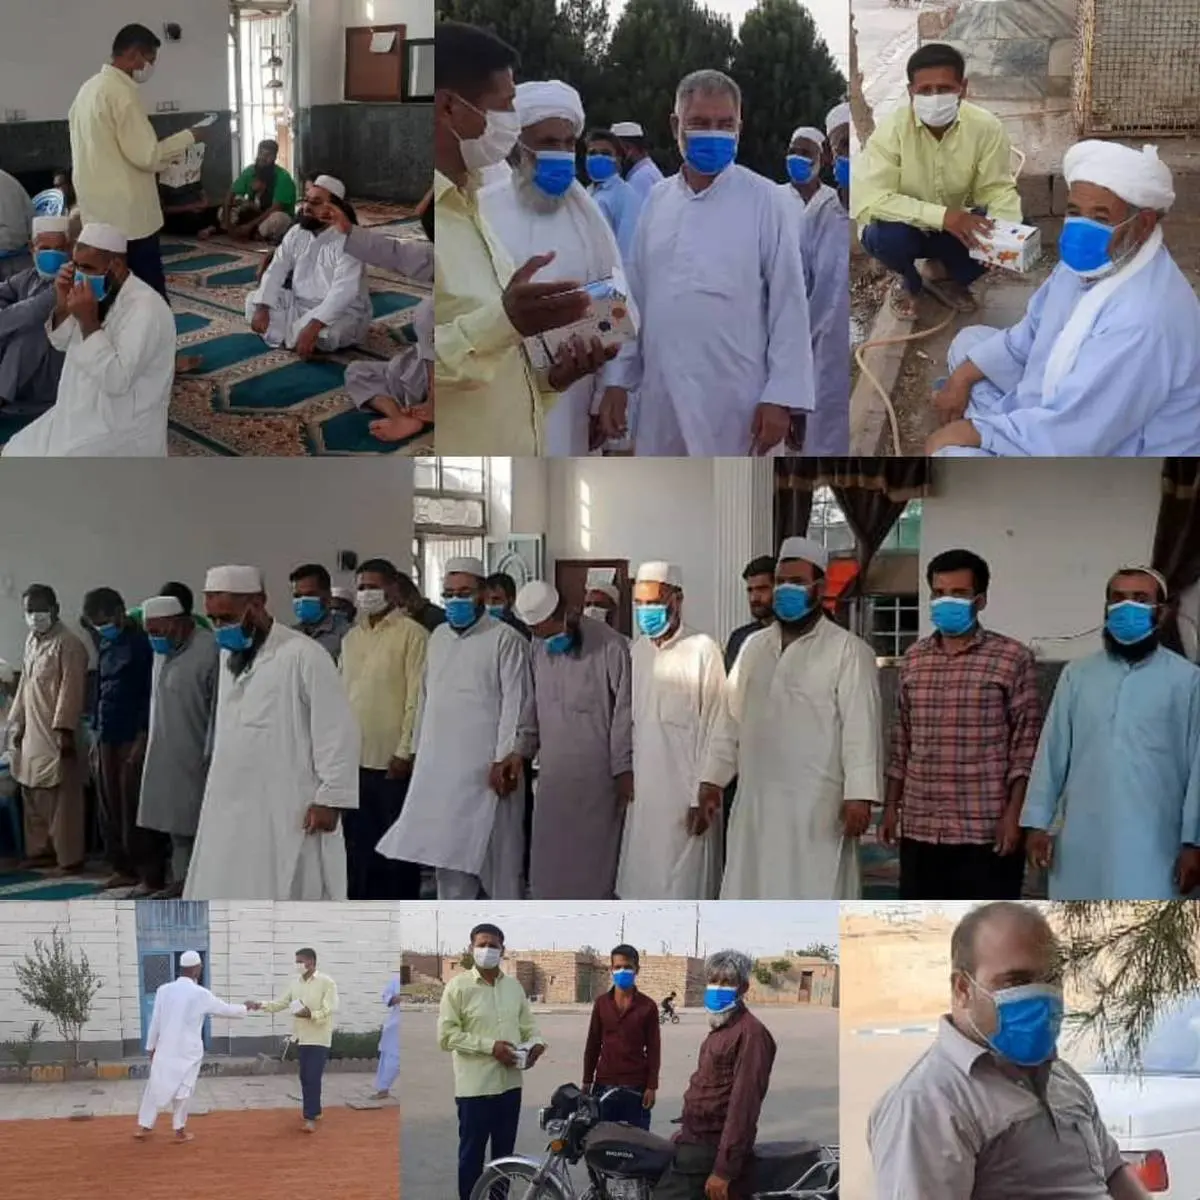 اجرای طرح « مسجد سنگر سلامت » توسط جهادگران بسیجی روستای مژن آباد